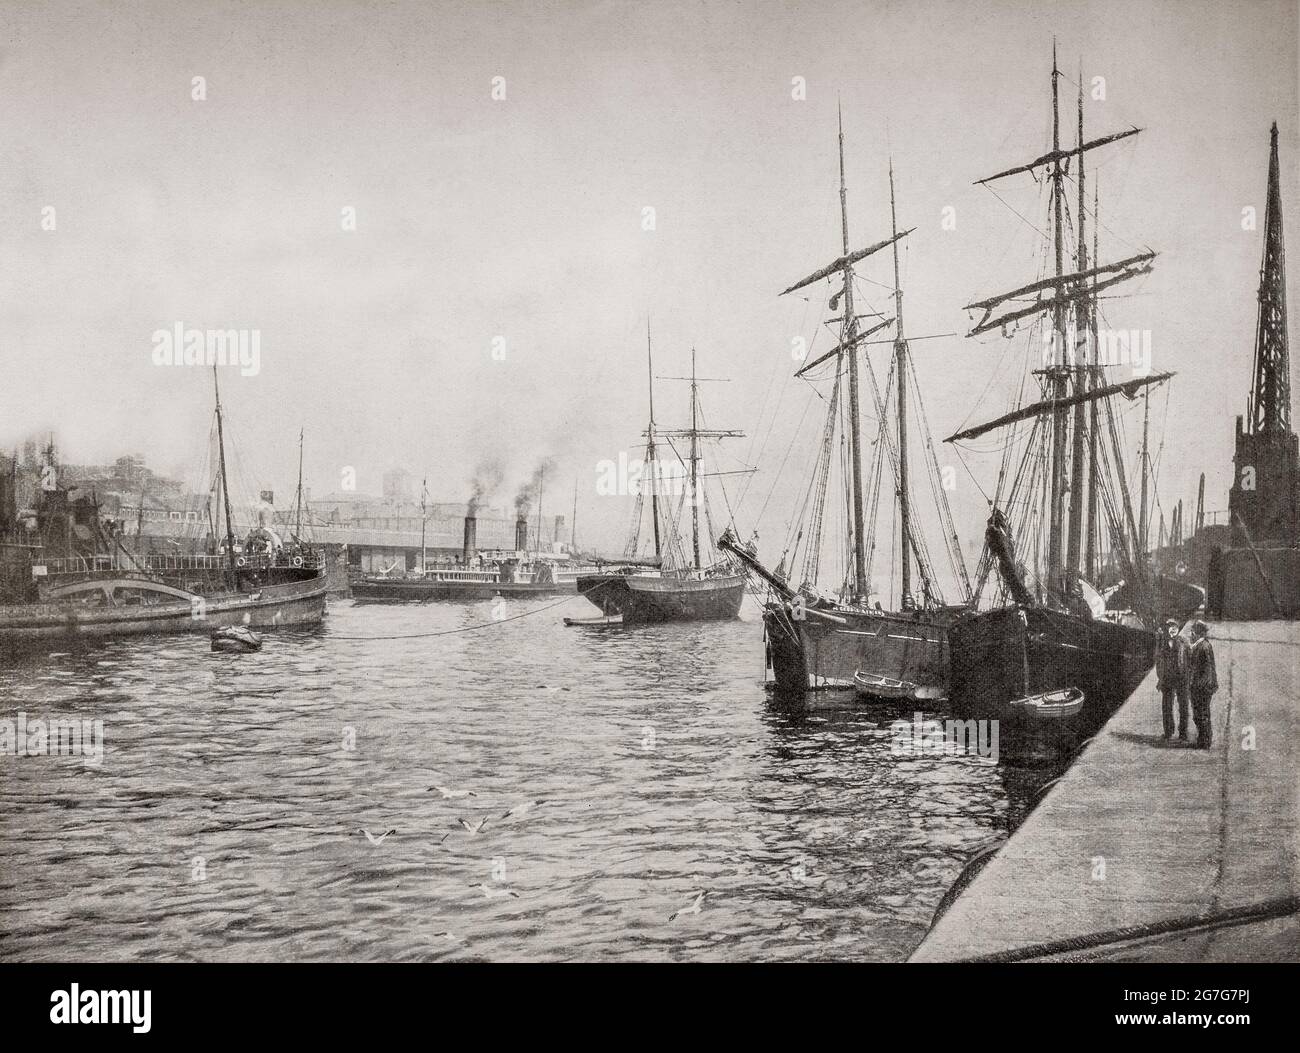 Ein Blick auf den Hafen aus dem späten 19. Jahrhundert mit festfahrenden Segelbooten auf dem Firth of Clyde in Govan, Glasgow, Schottland. Am fernen Kai macht sich der Raddampfer Iona a Dampf, der später für Ausflüge zu den Western Isles verwendet wurde. Sie machte ihre letzte Reise 1862 und wurde während des amerikanischen Bürgerkrieges an die konföderierte Seite verkauft, sank aber später bei einer Kollision. Stockfoto